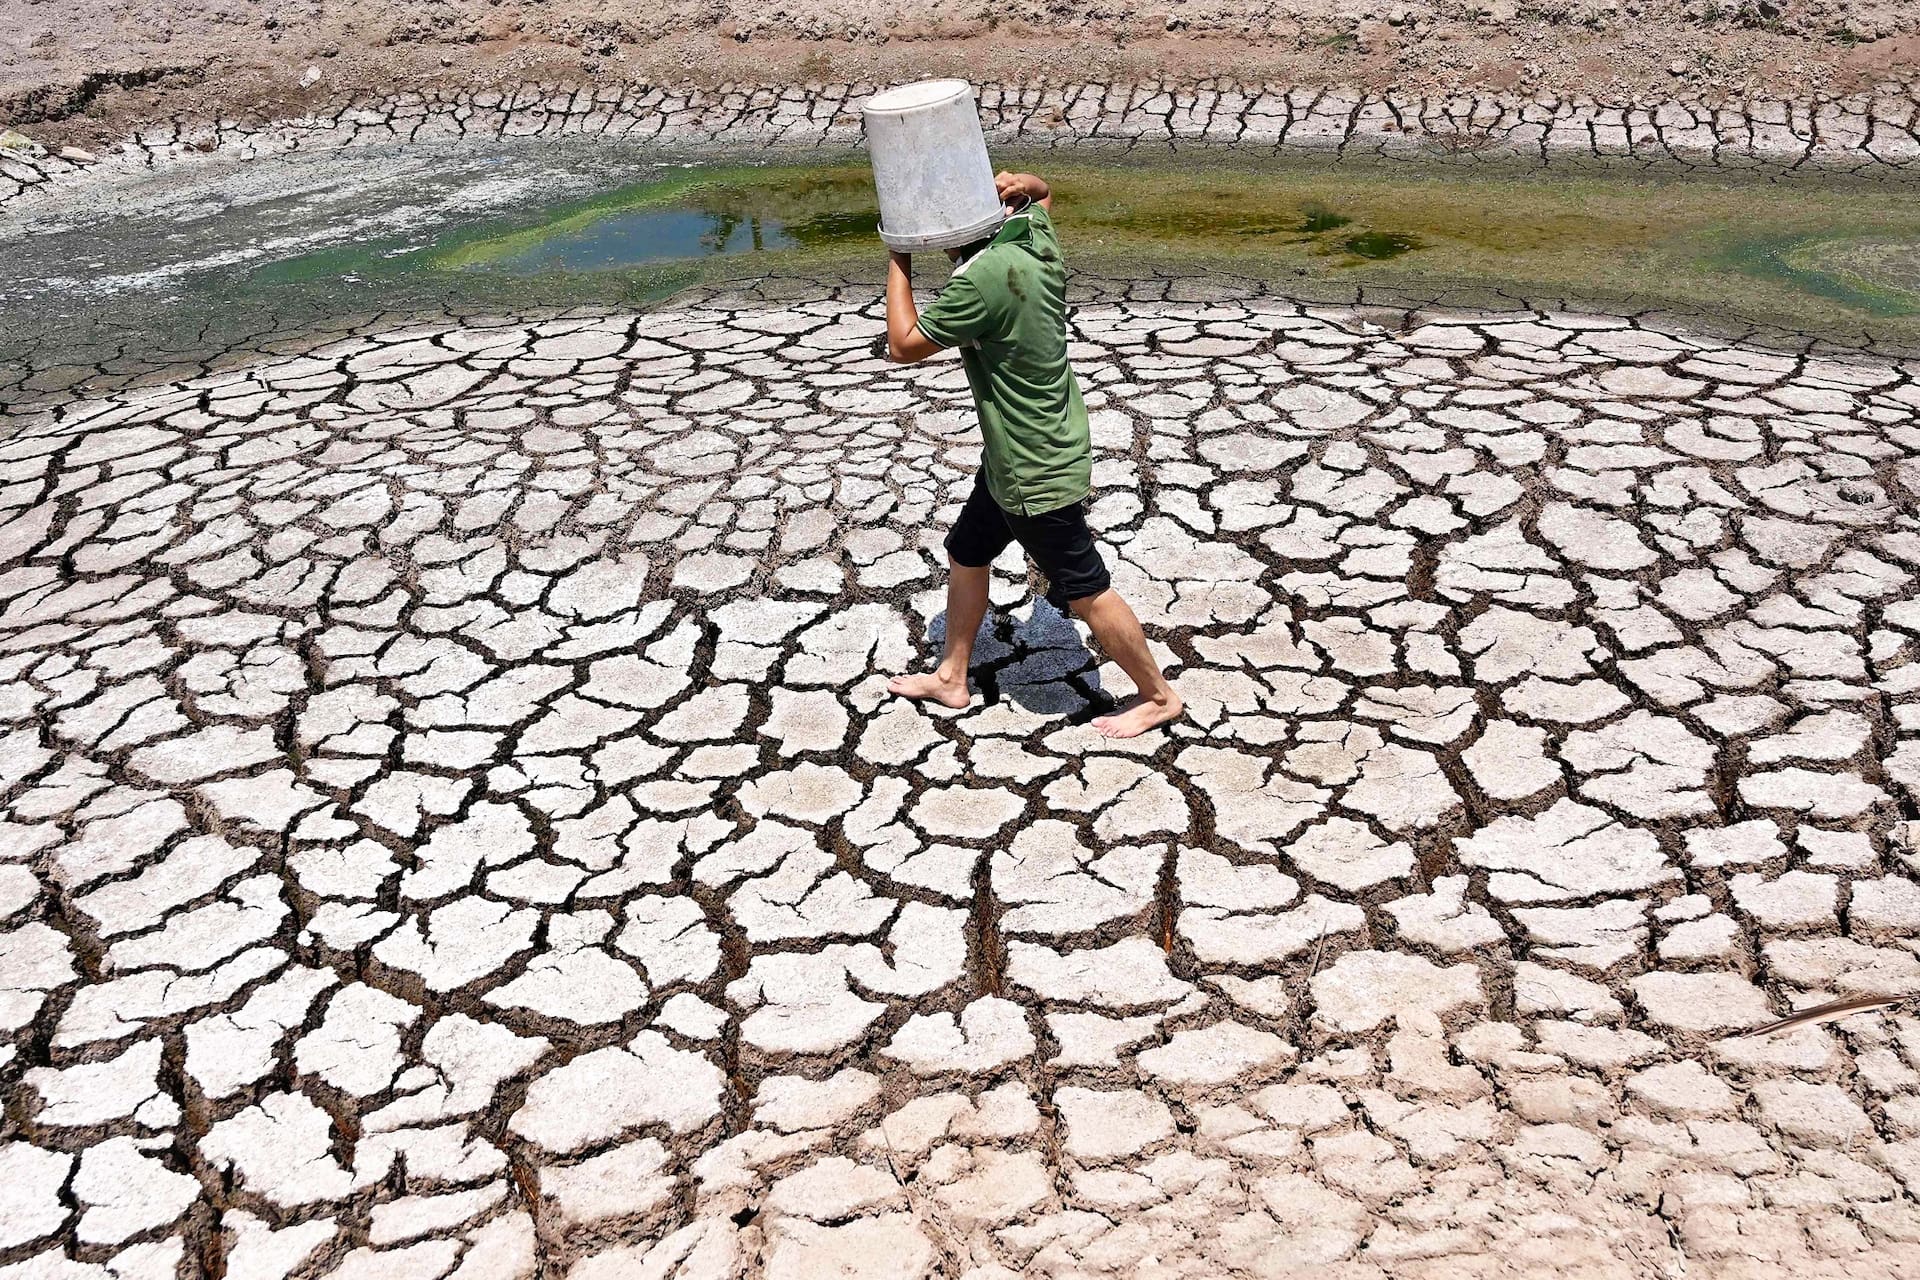 Un hombre lleva un cubo de plástico a través del lecho agrietado de un estanque seco en la provincia de Ben Tre, al sur de VietnamNHAC NGUYEN - AFP